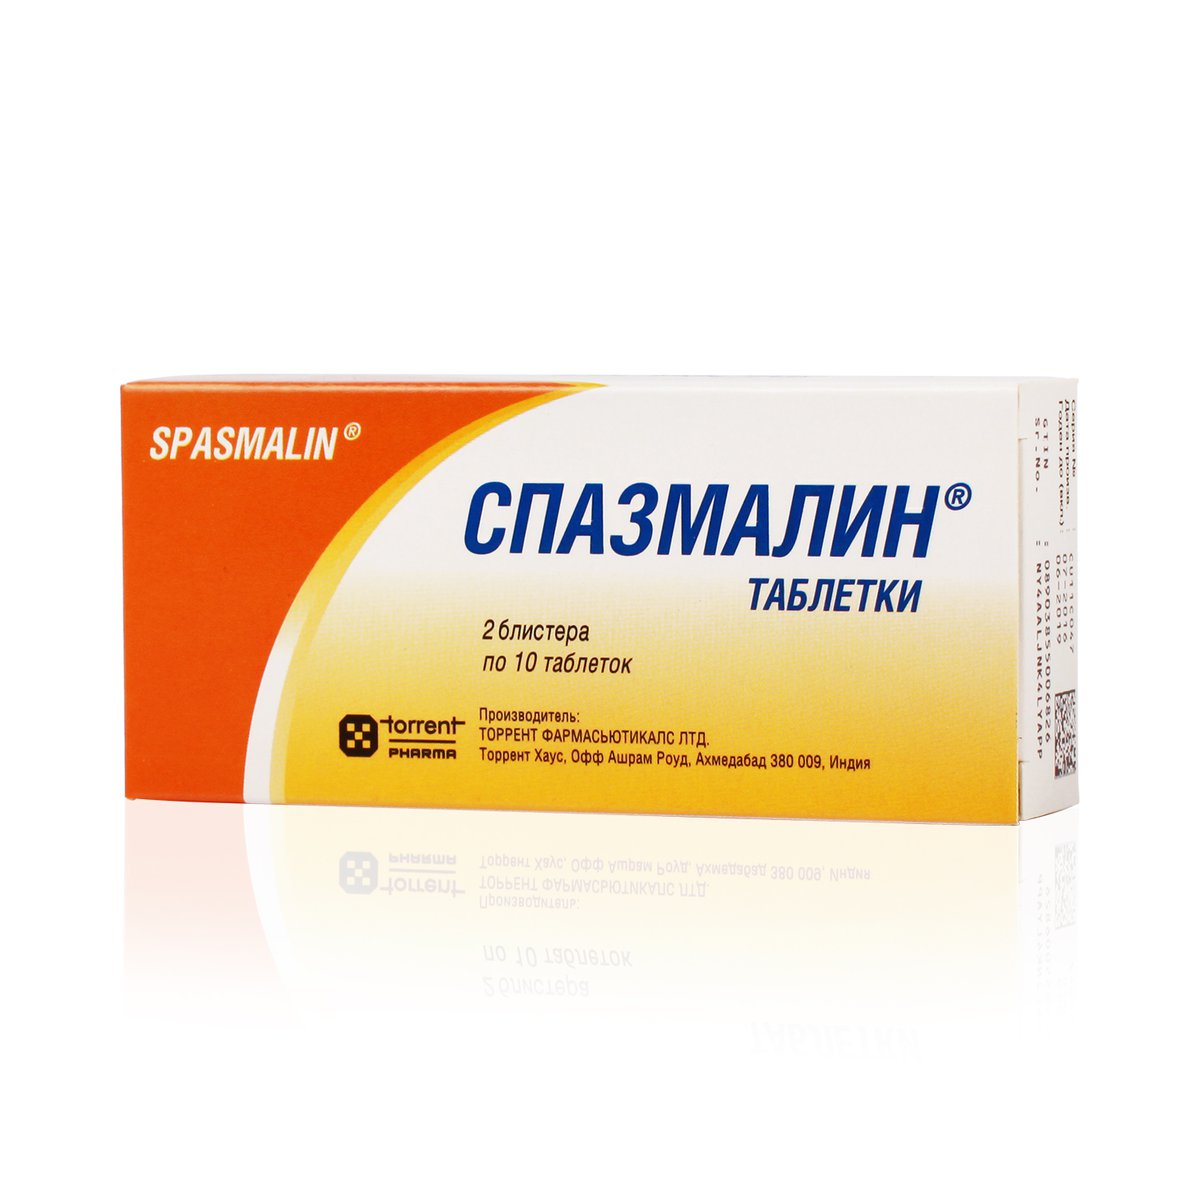 Спазмалин (таблетки, 20 шт) - цена,  онлайн , описание .